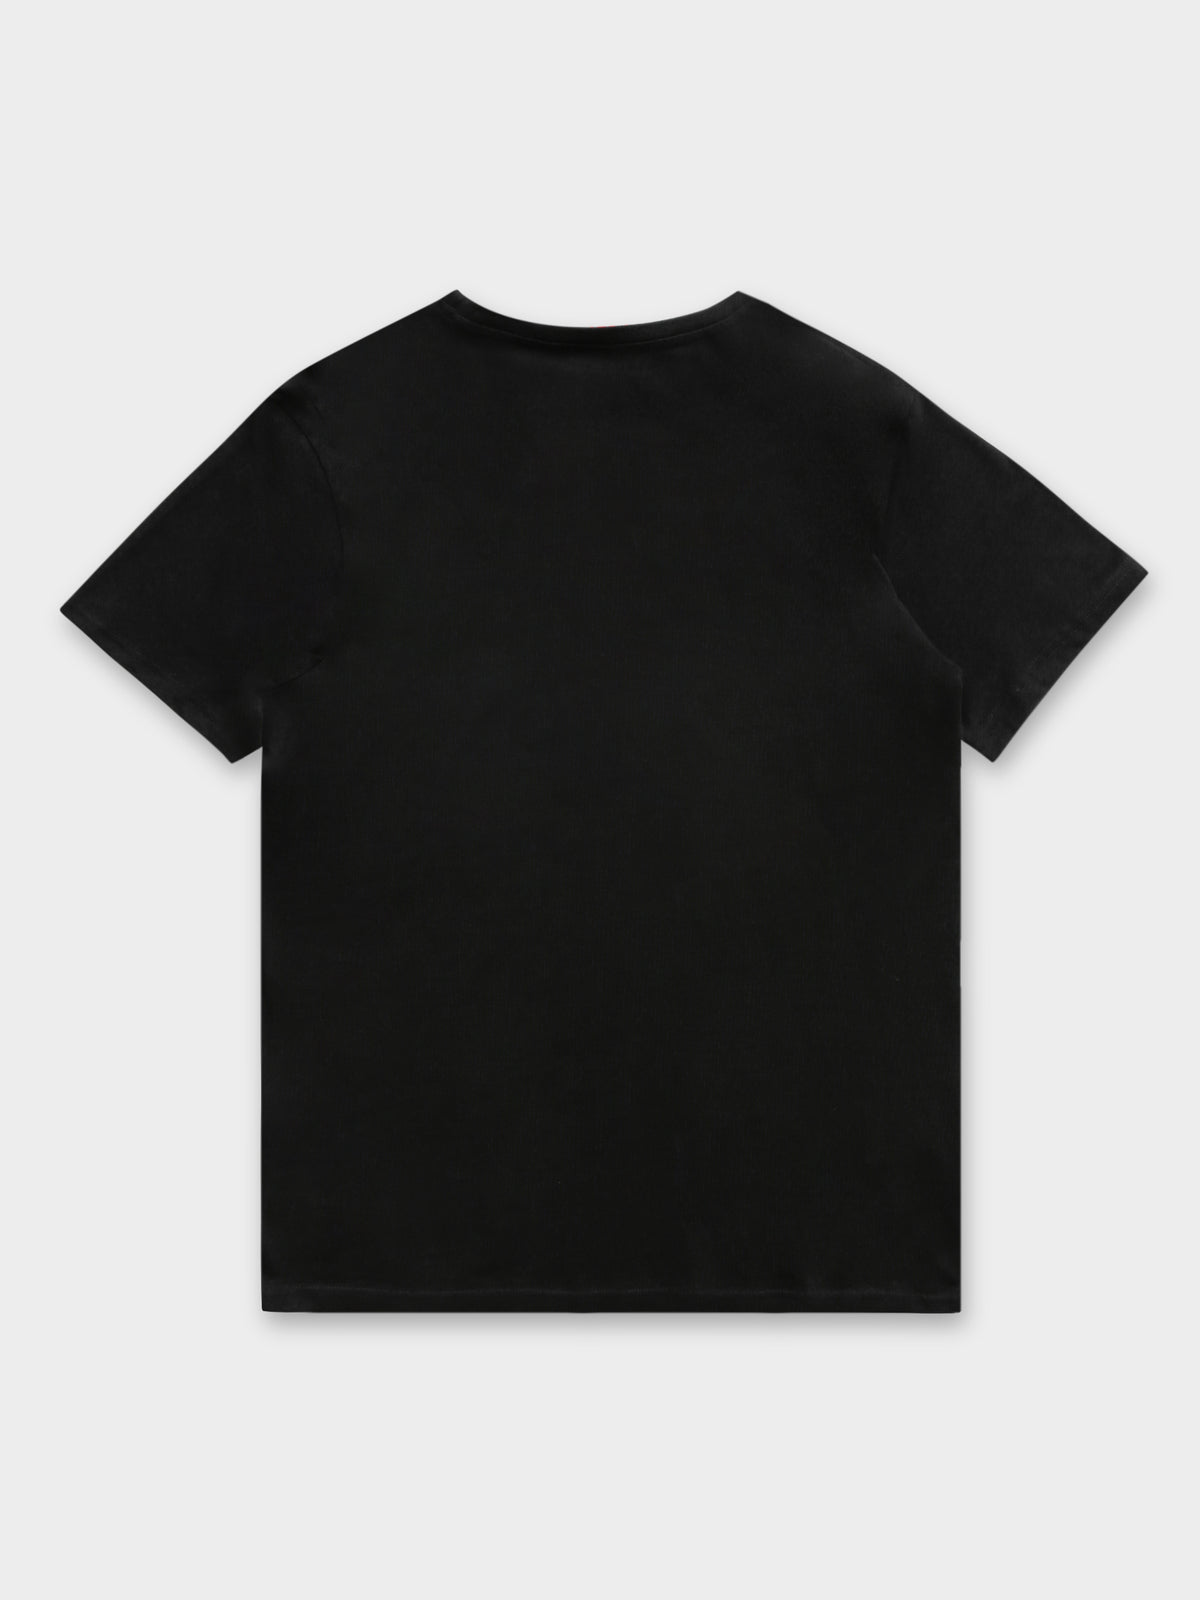 Authentic Dorian T-Shirt in Black